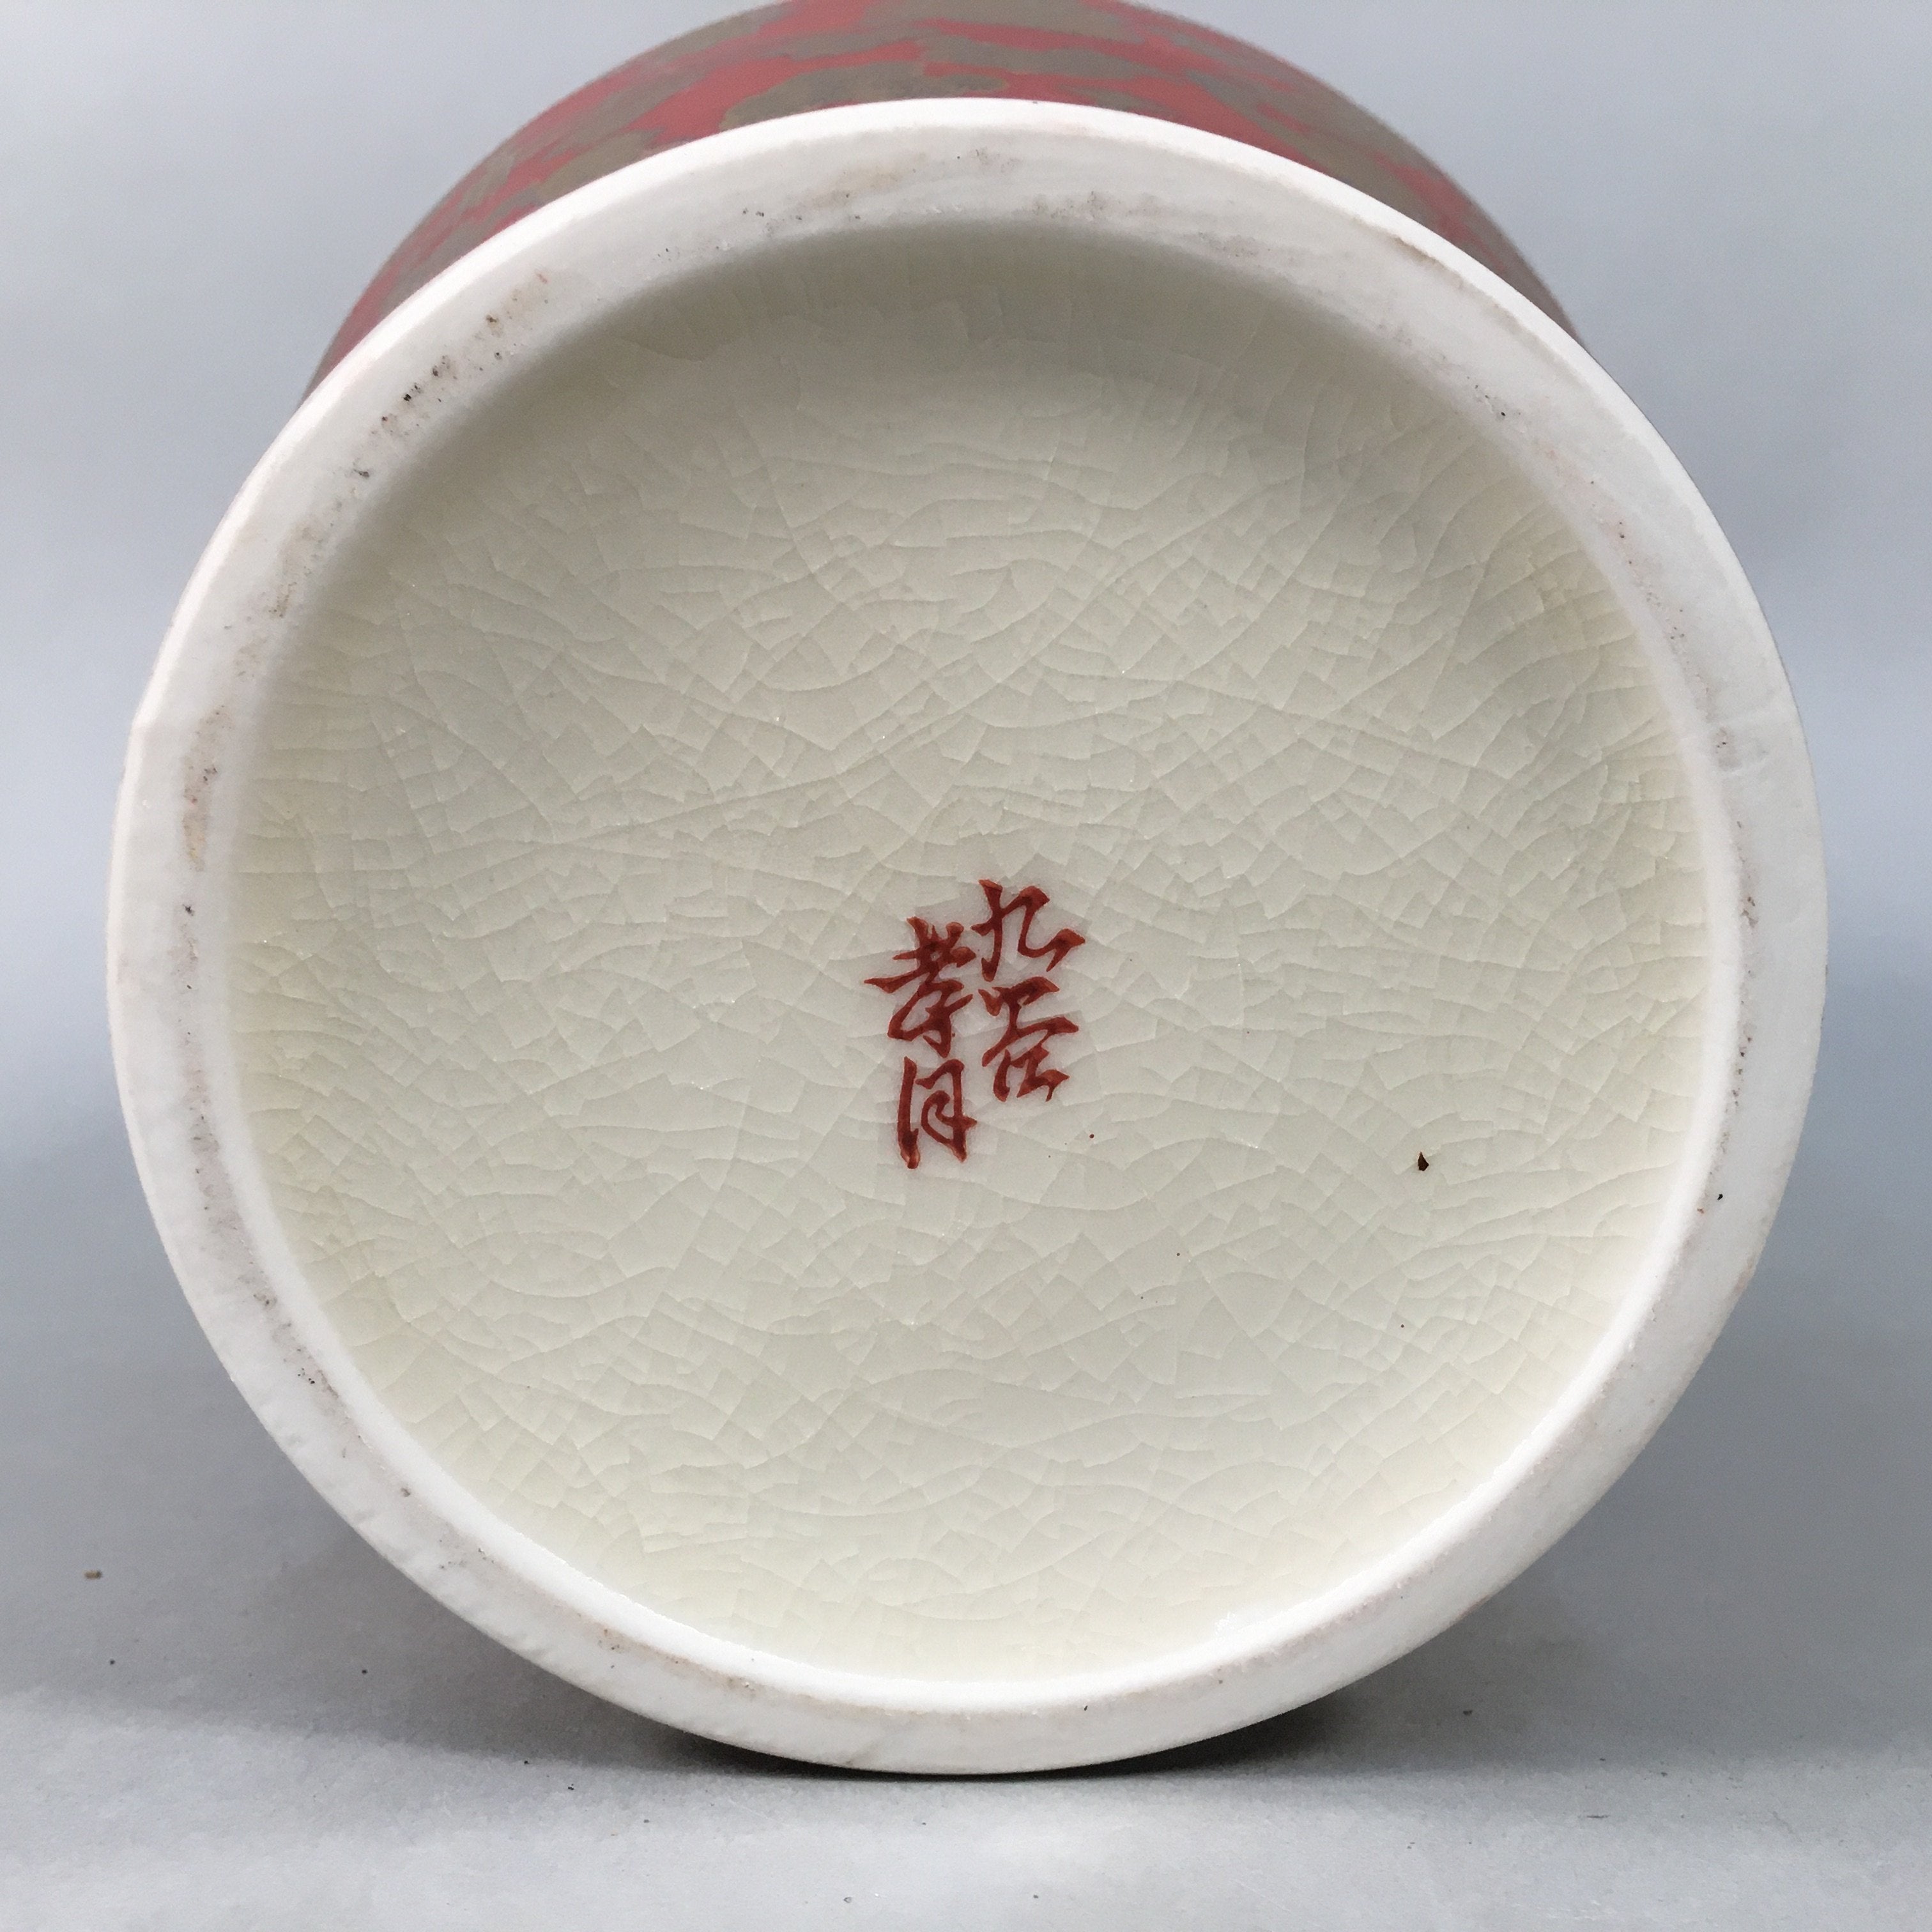 Japanese Porcelain Flower Vase Kutani ware Vtg Kabin Ikebana Red Gold FV895